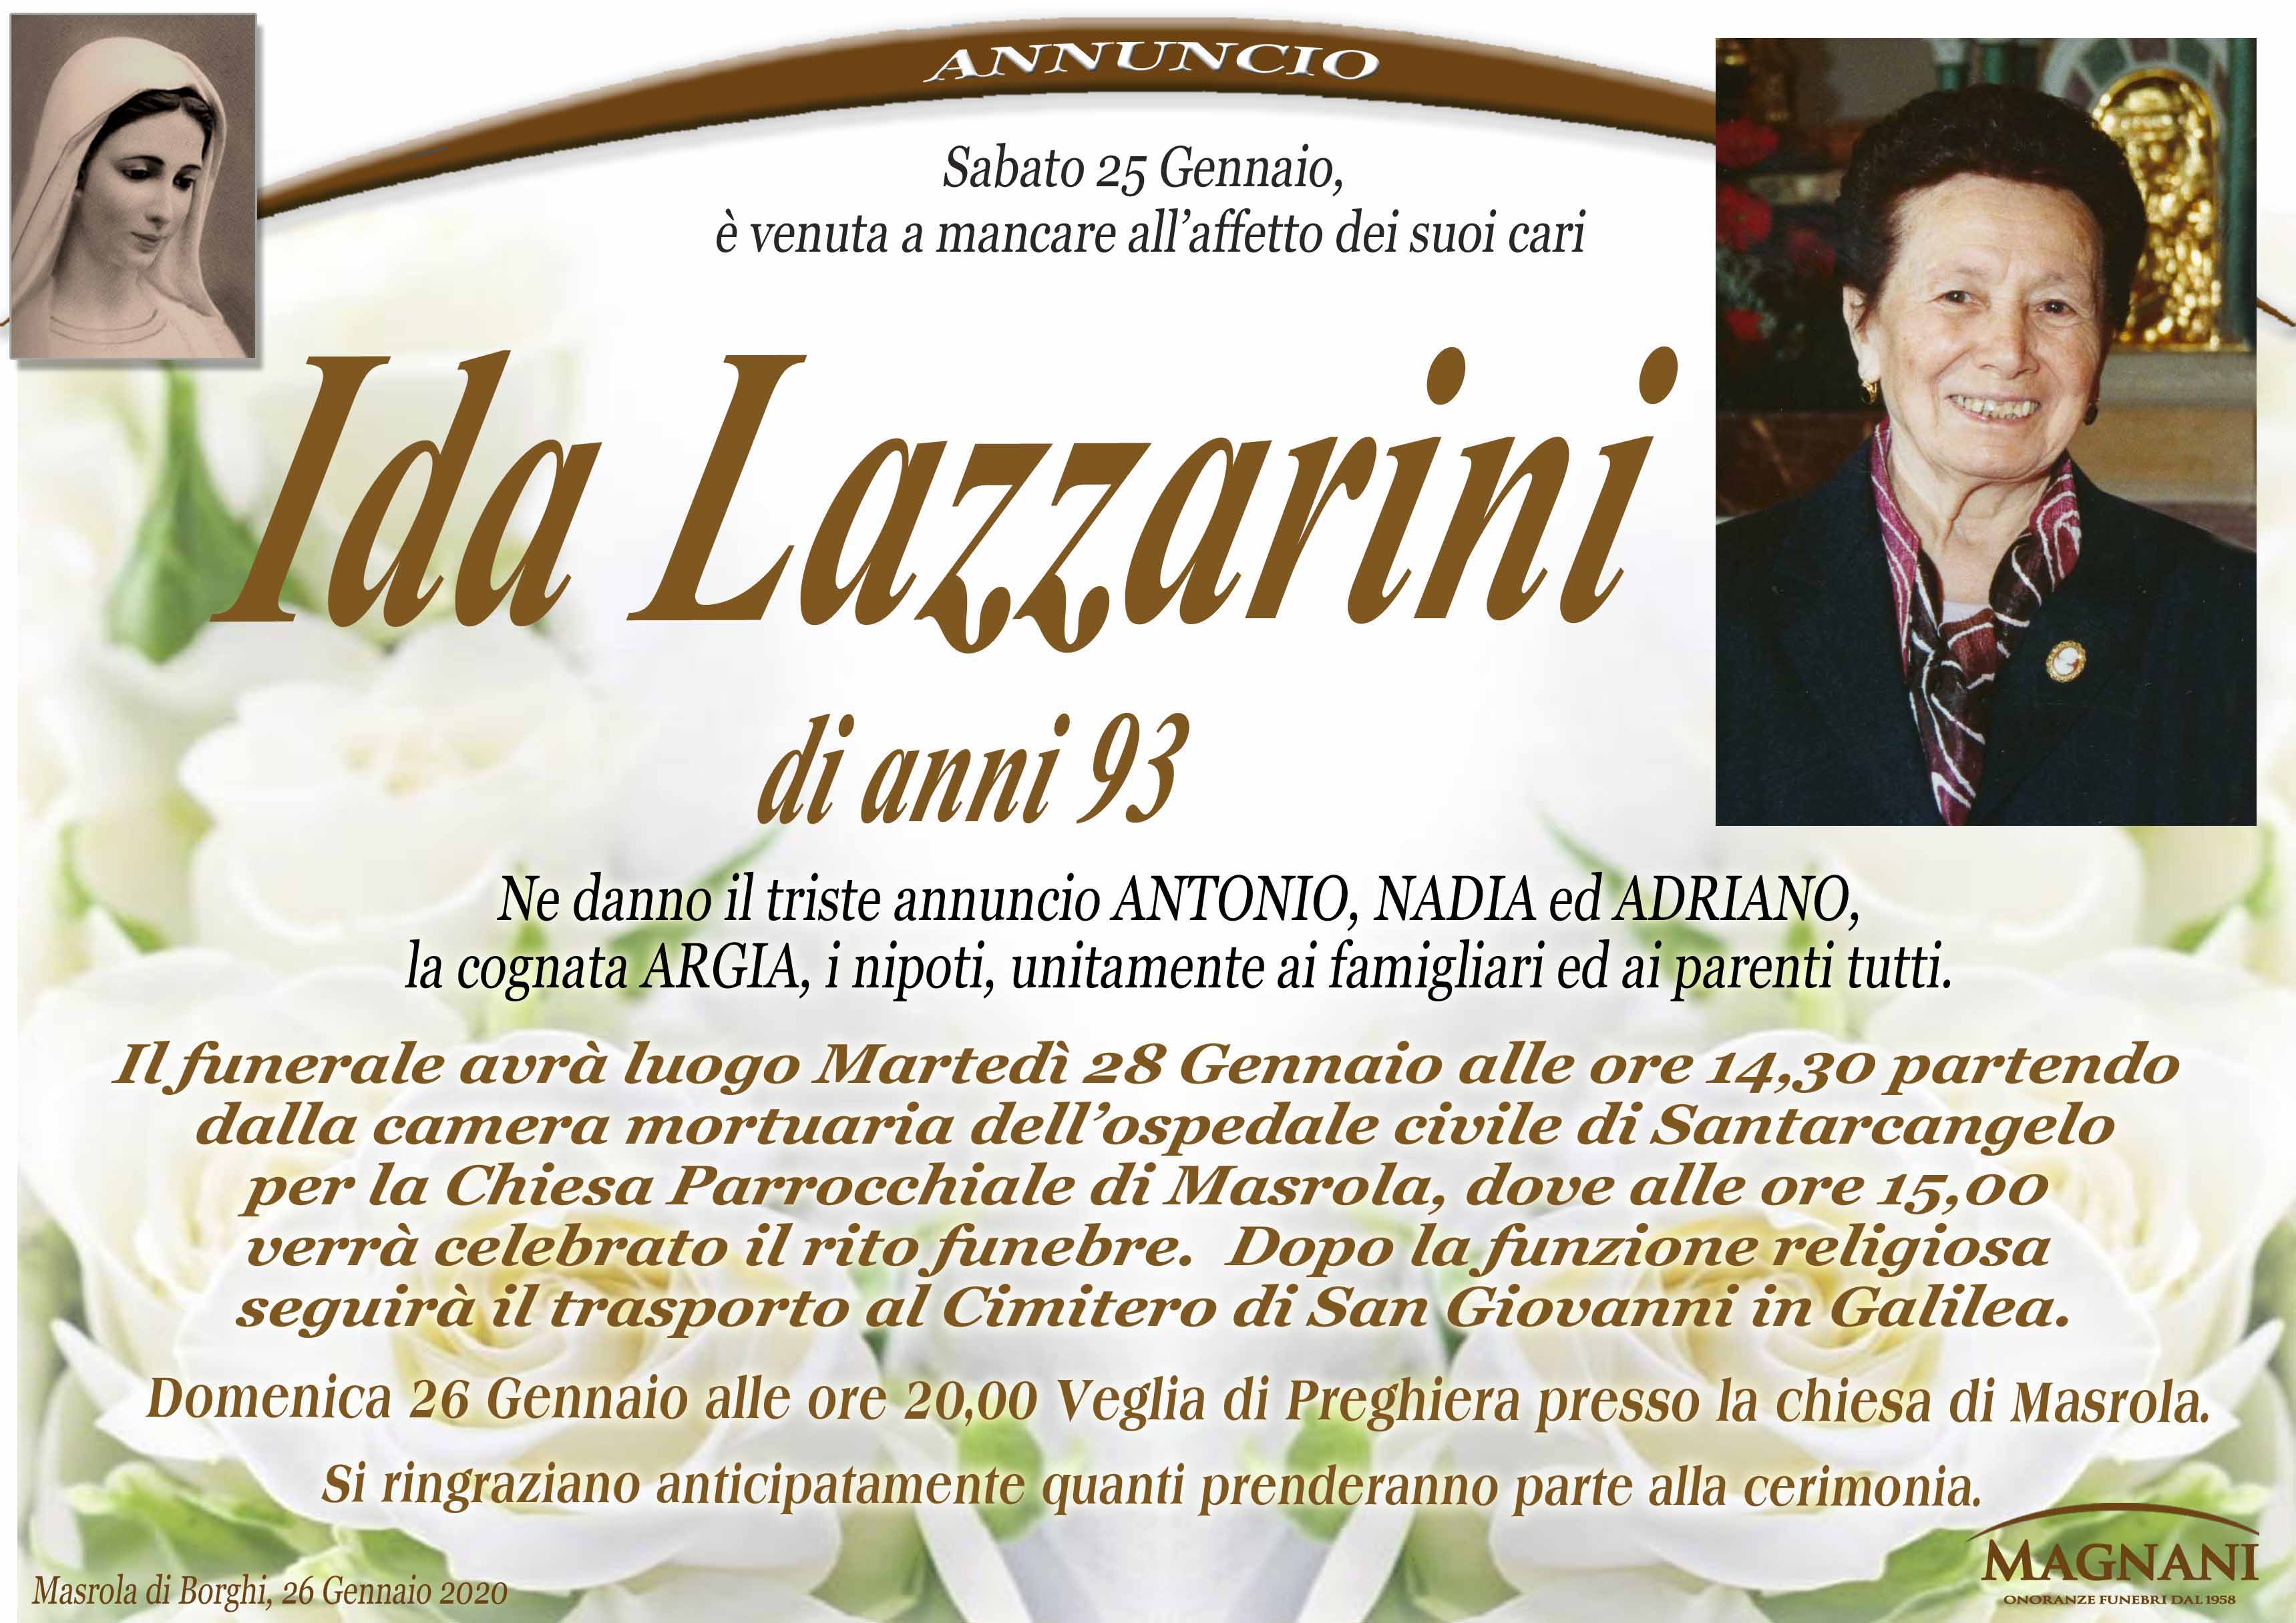 Ida Lazzarini